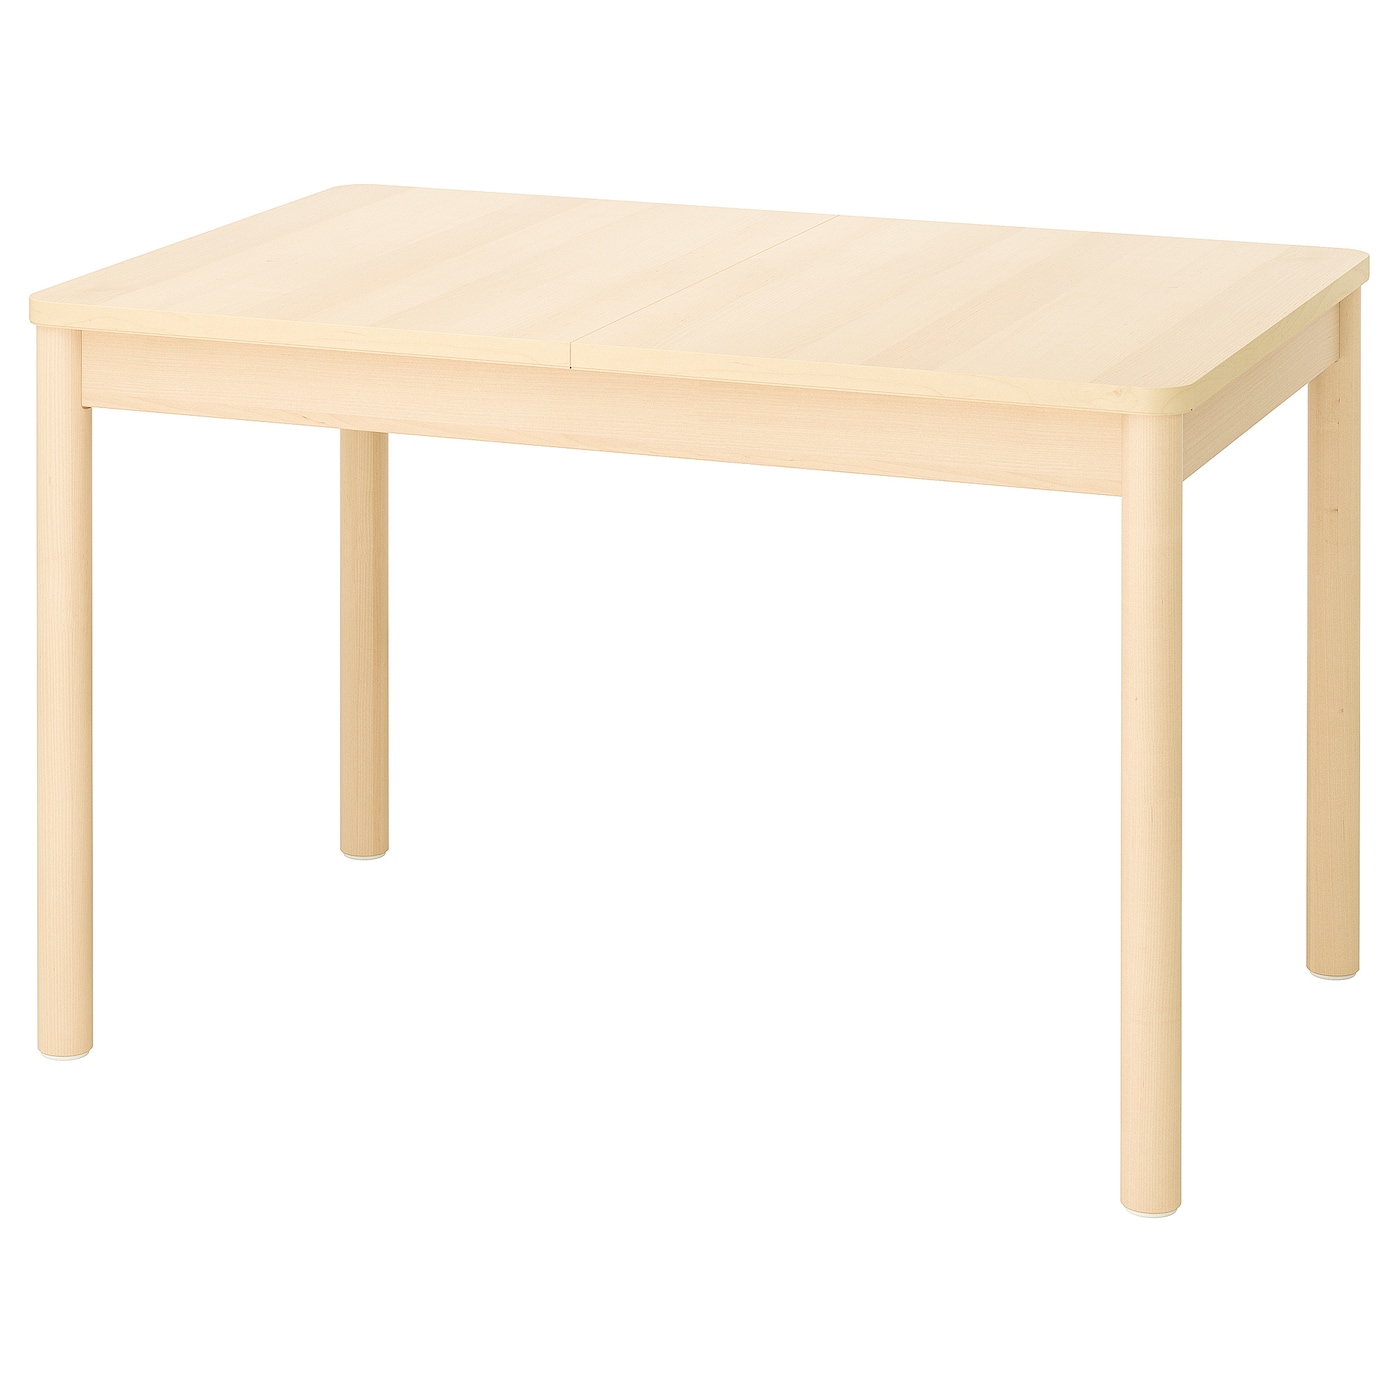 Раздвижной обеденный стол - IKEA RÖNNINGE, 173/118х78х75 см, коричневый, РЁННИНГЕ ИКЕА